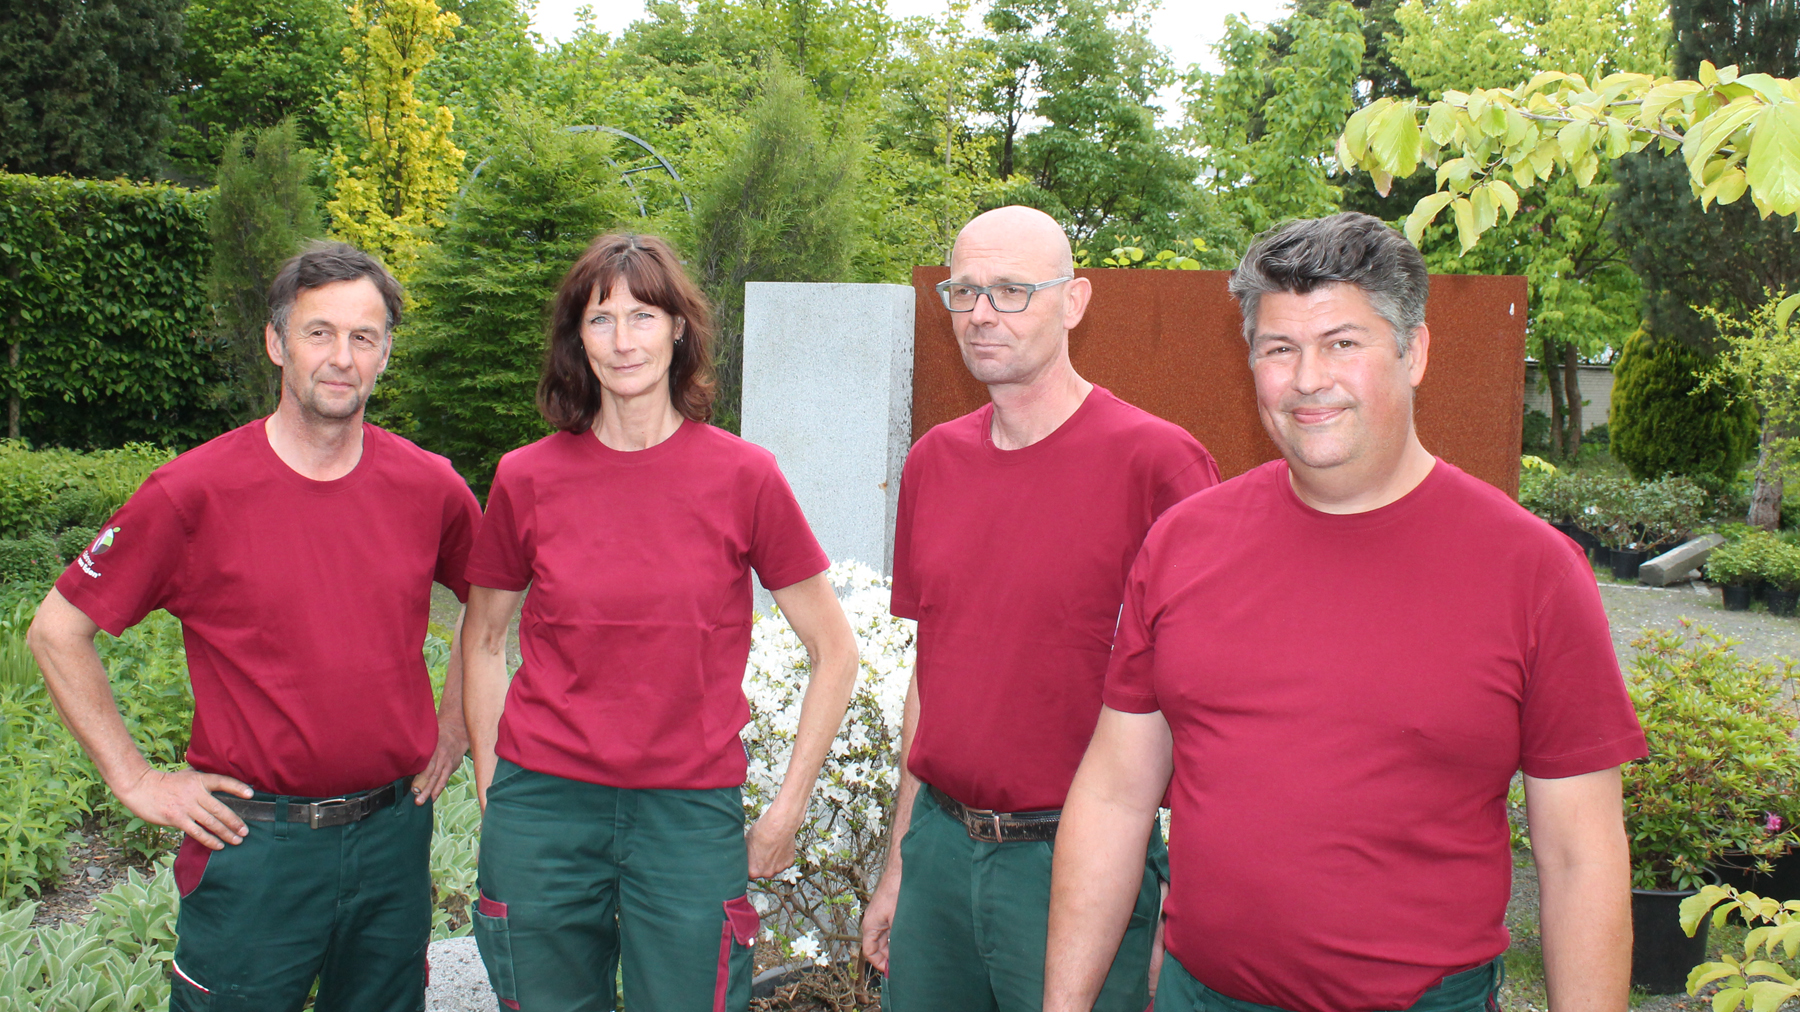 Team Kappe Gärtner von Eden aus Bergisch Gladbach